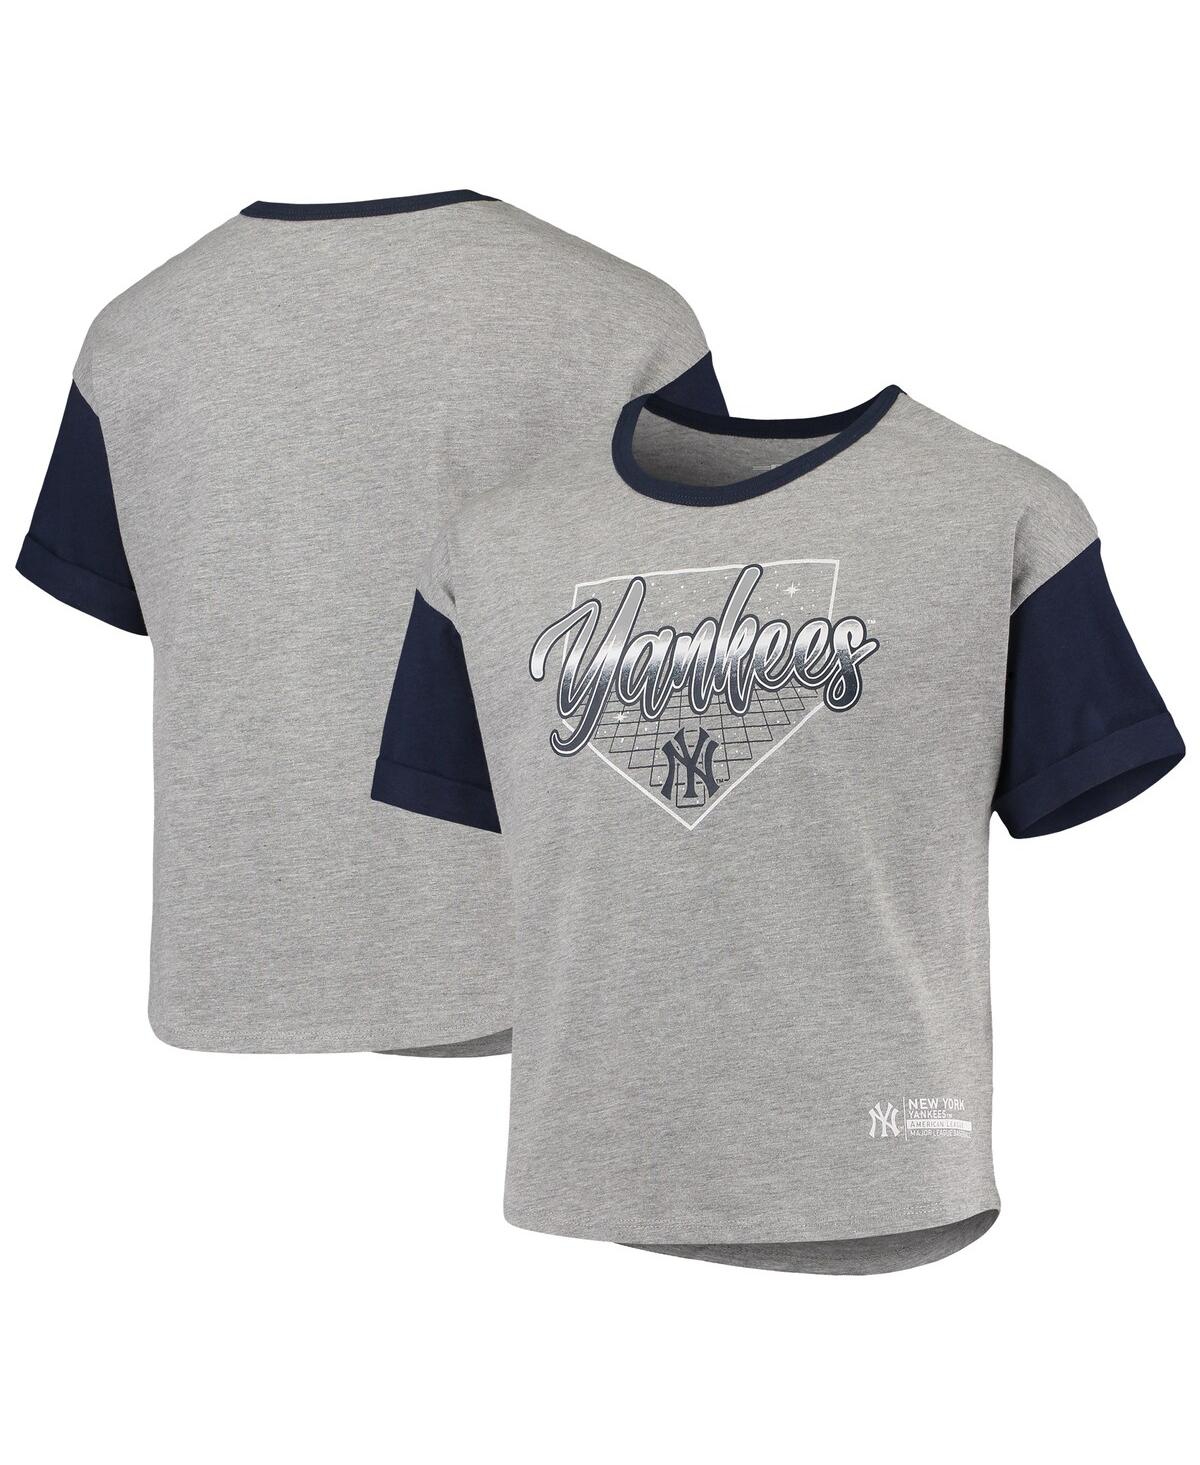 Outerstuff Kids' Big Girls Heathered Gray New York Yankees Bleachers T-shirt